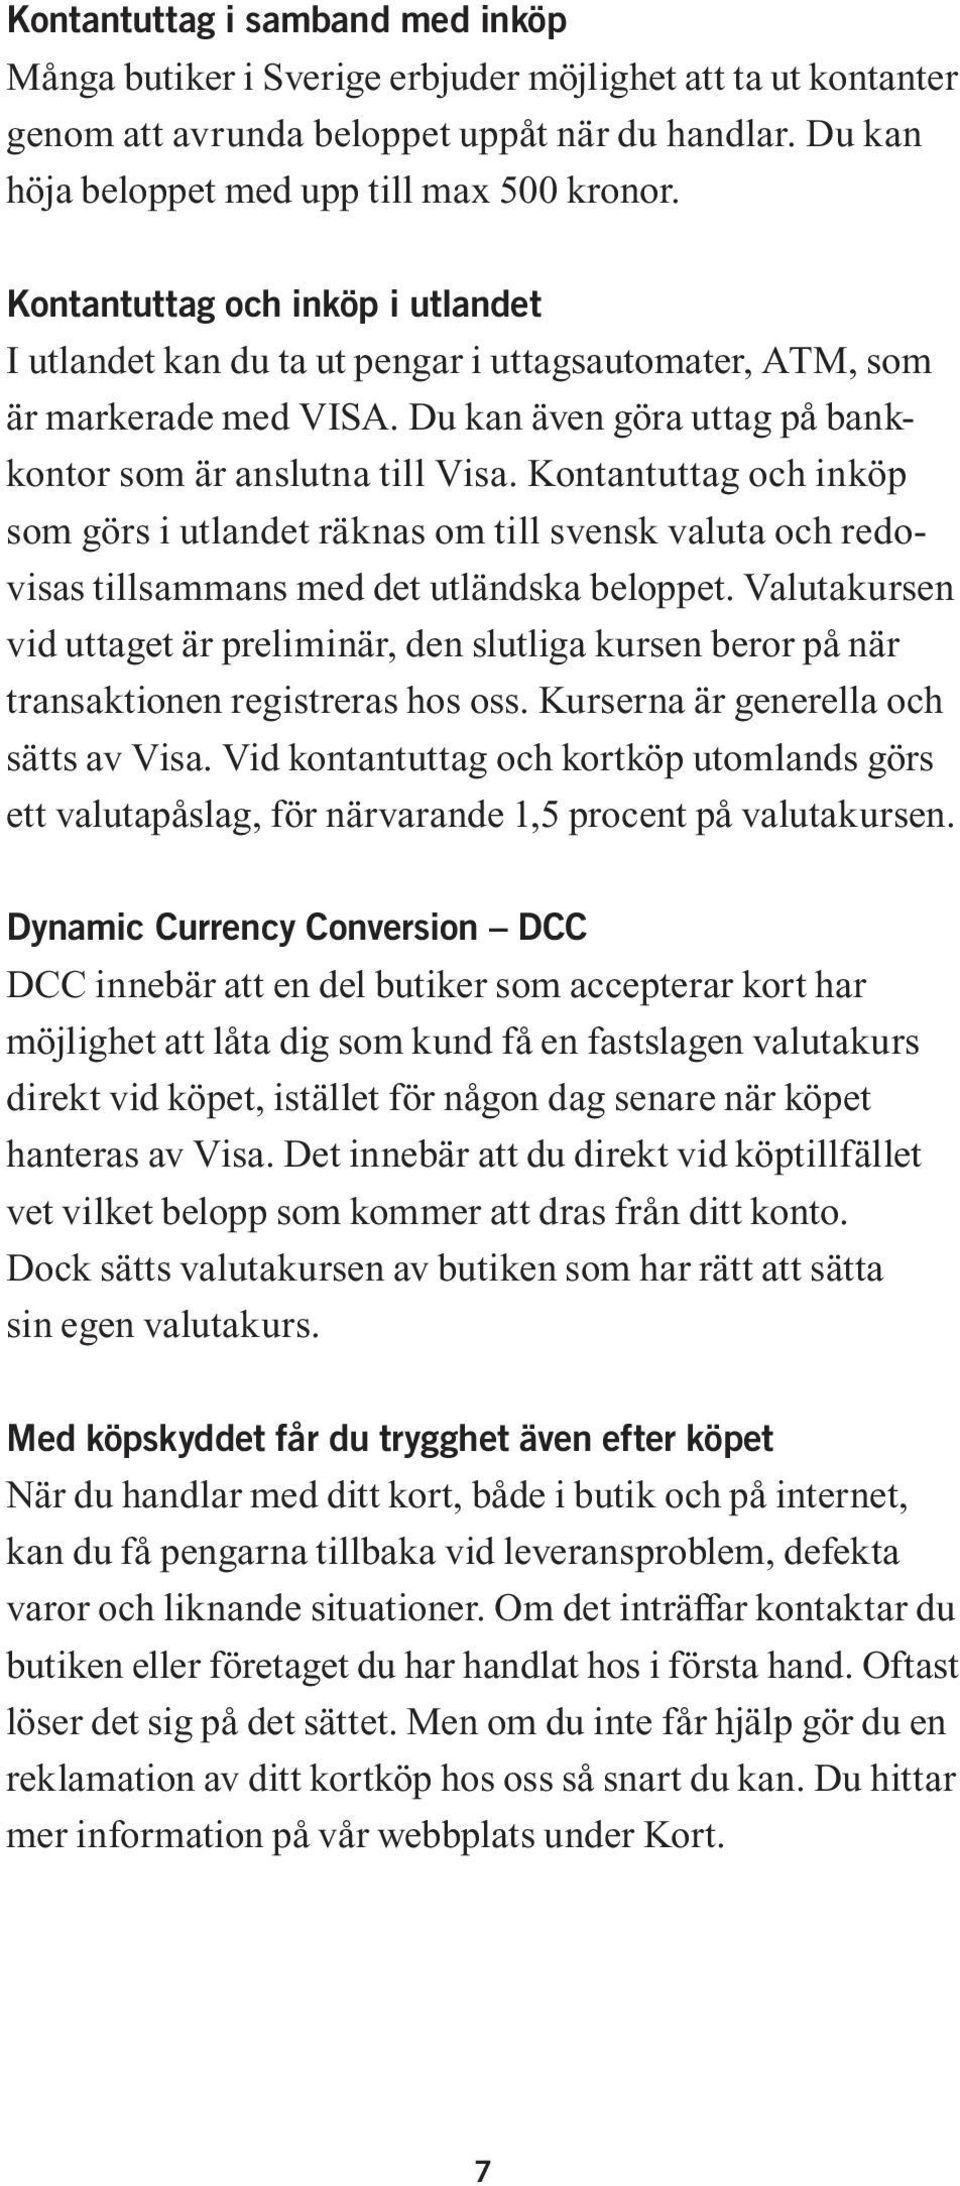 Kontantuttag och inköp som görs i utlandet räknas om till svensk valuta och redovisas tillsammans med det utländska beloppet.